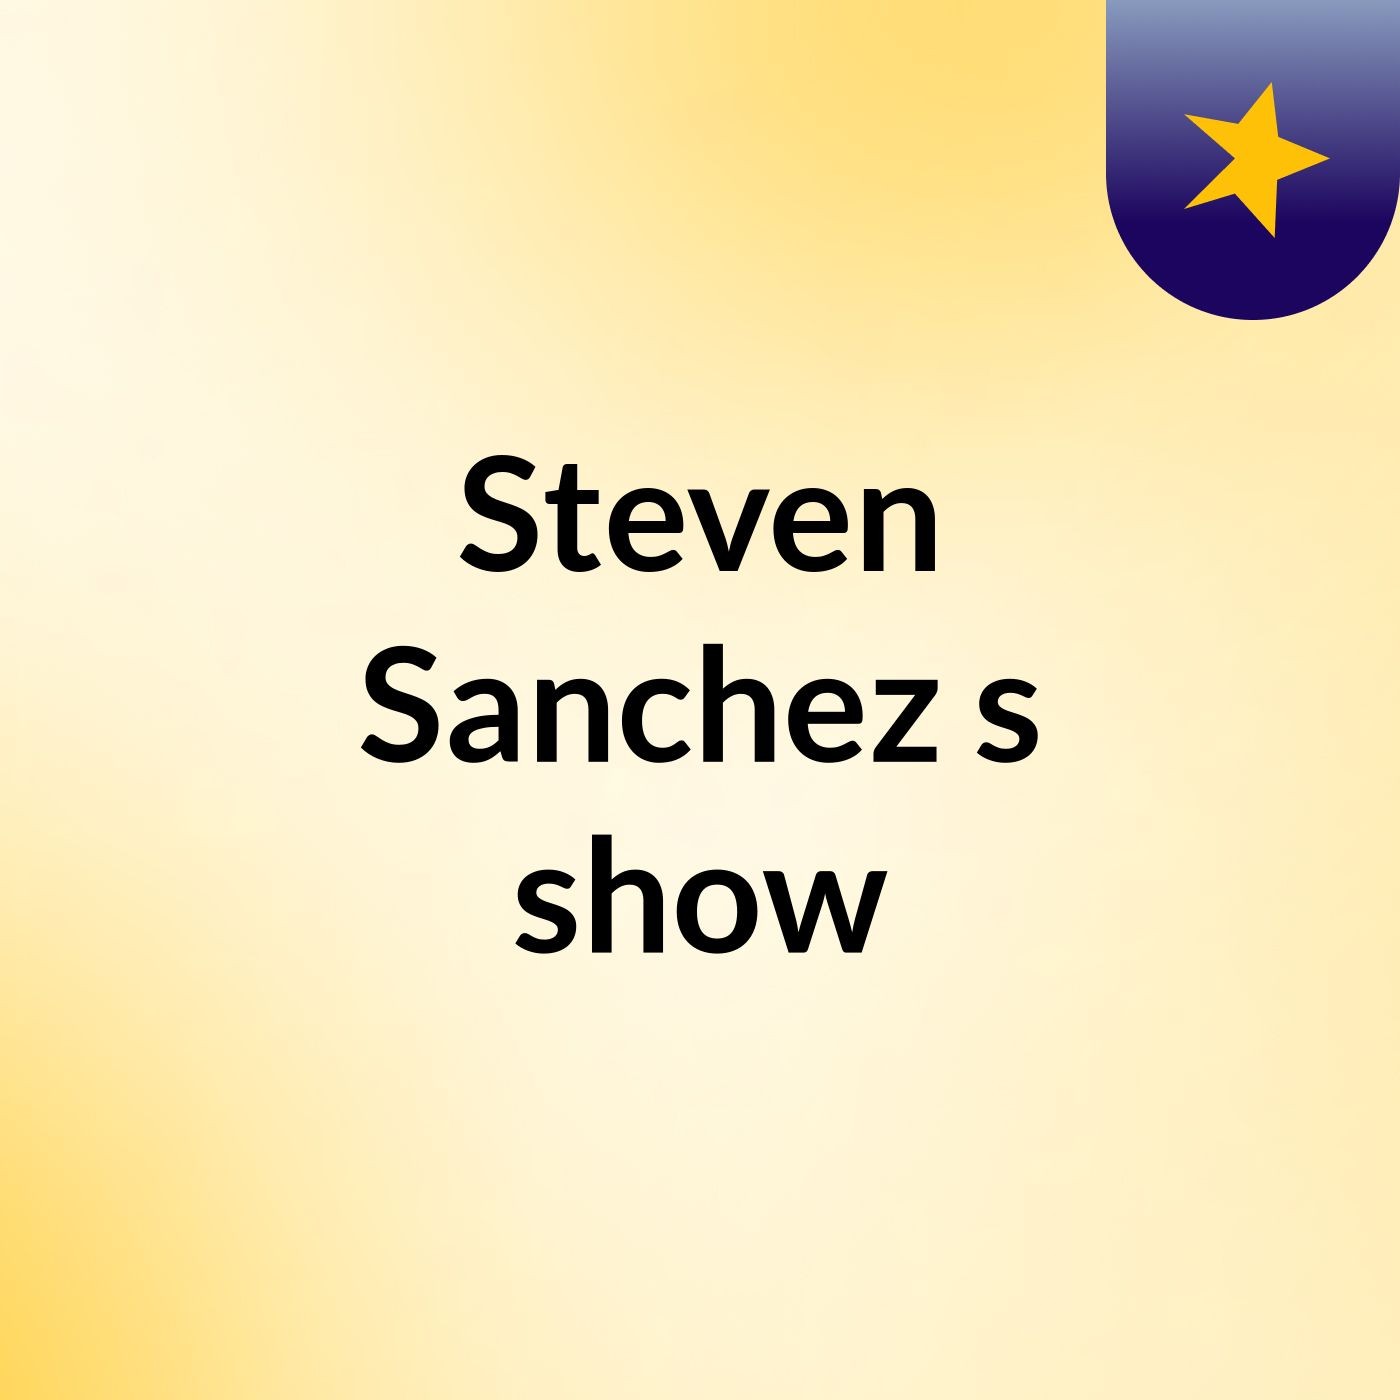 Steven Sanchez's show